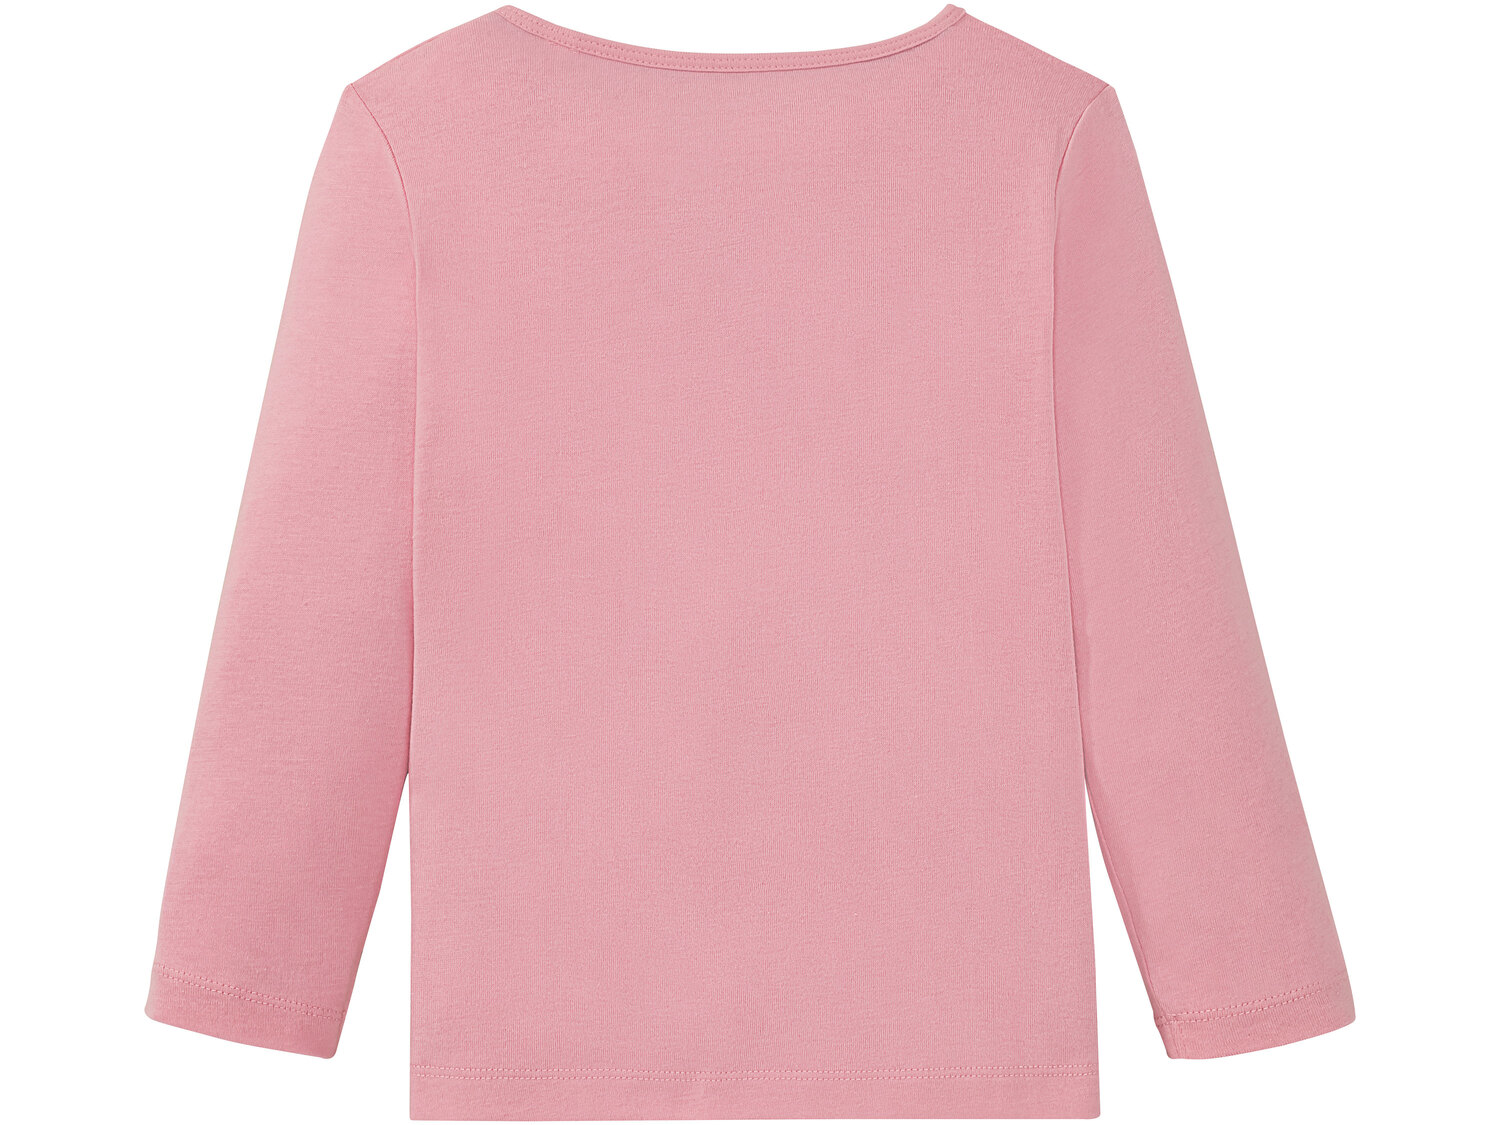 Piżama dziecięca , cena 17,99 PLN 
- rozmiary: 86-116
- koszulka: 100% bawełny, ...